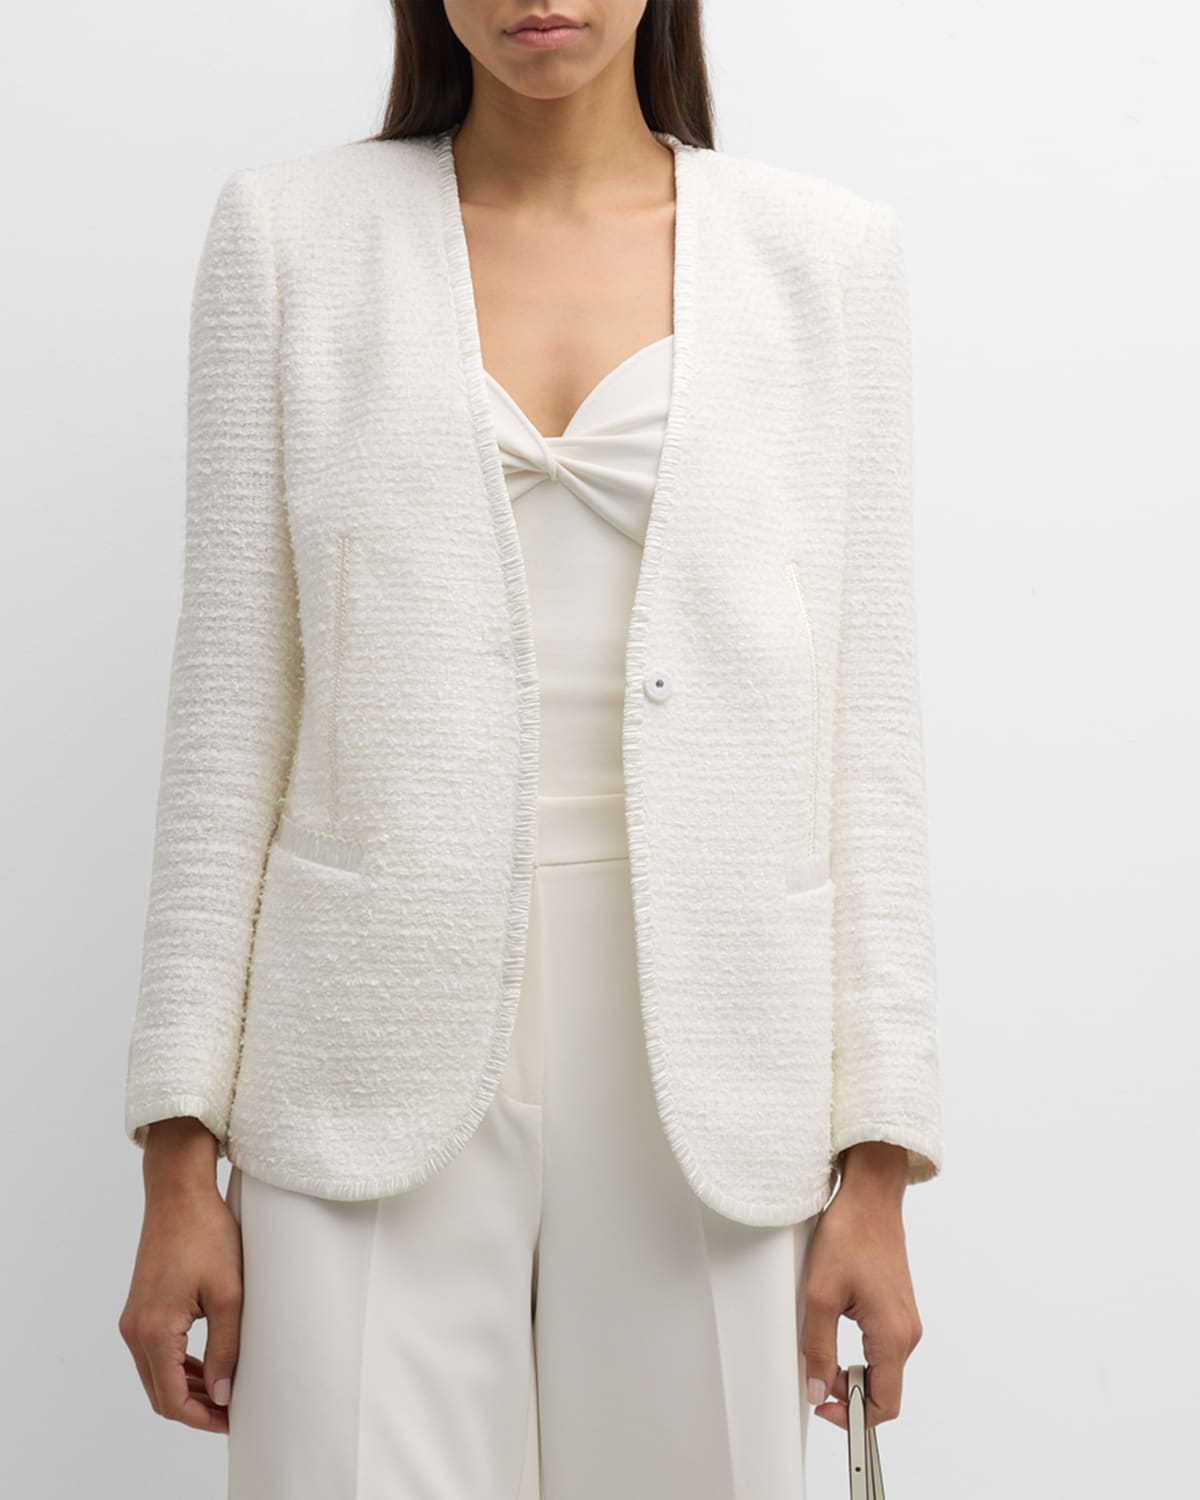 Evangeline V-Neck Snap-Front Tweed Jacket